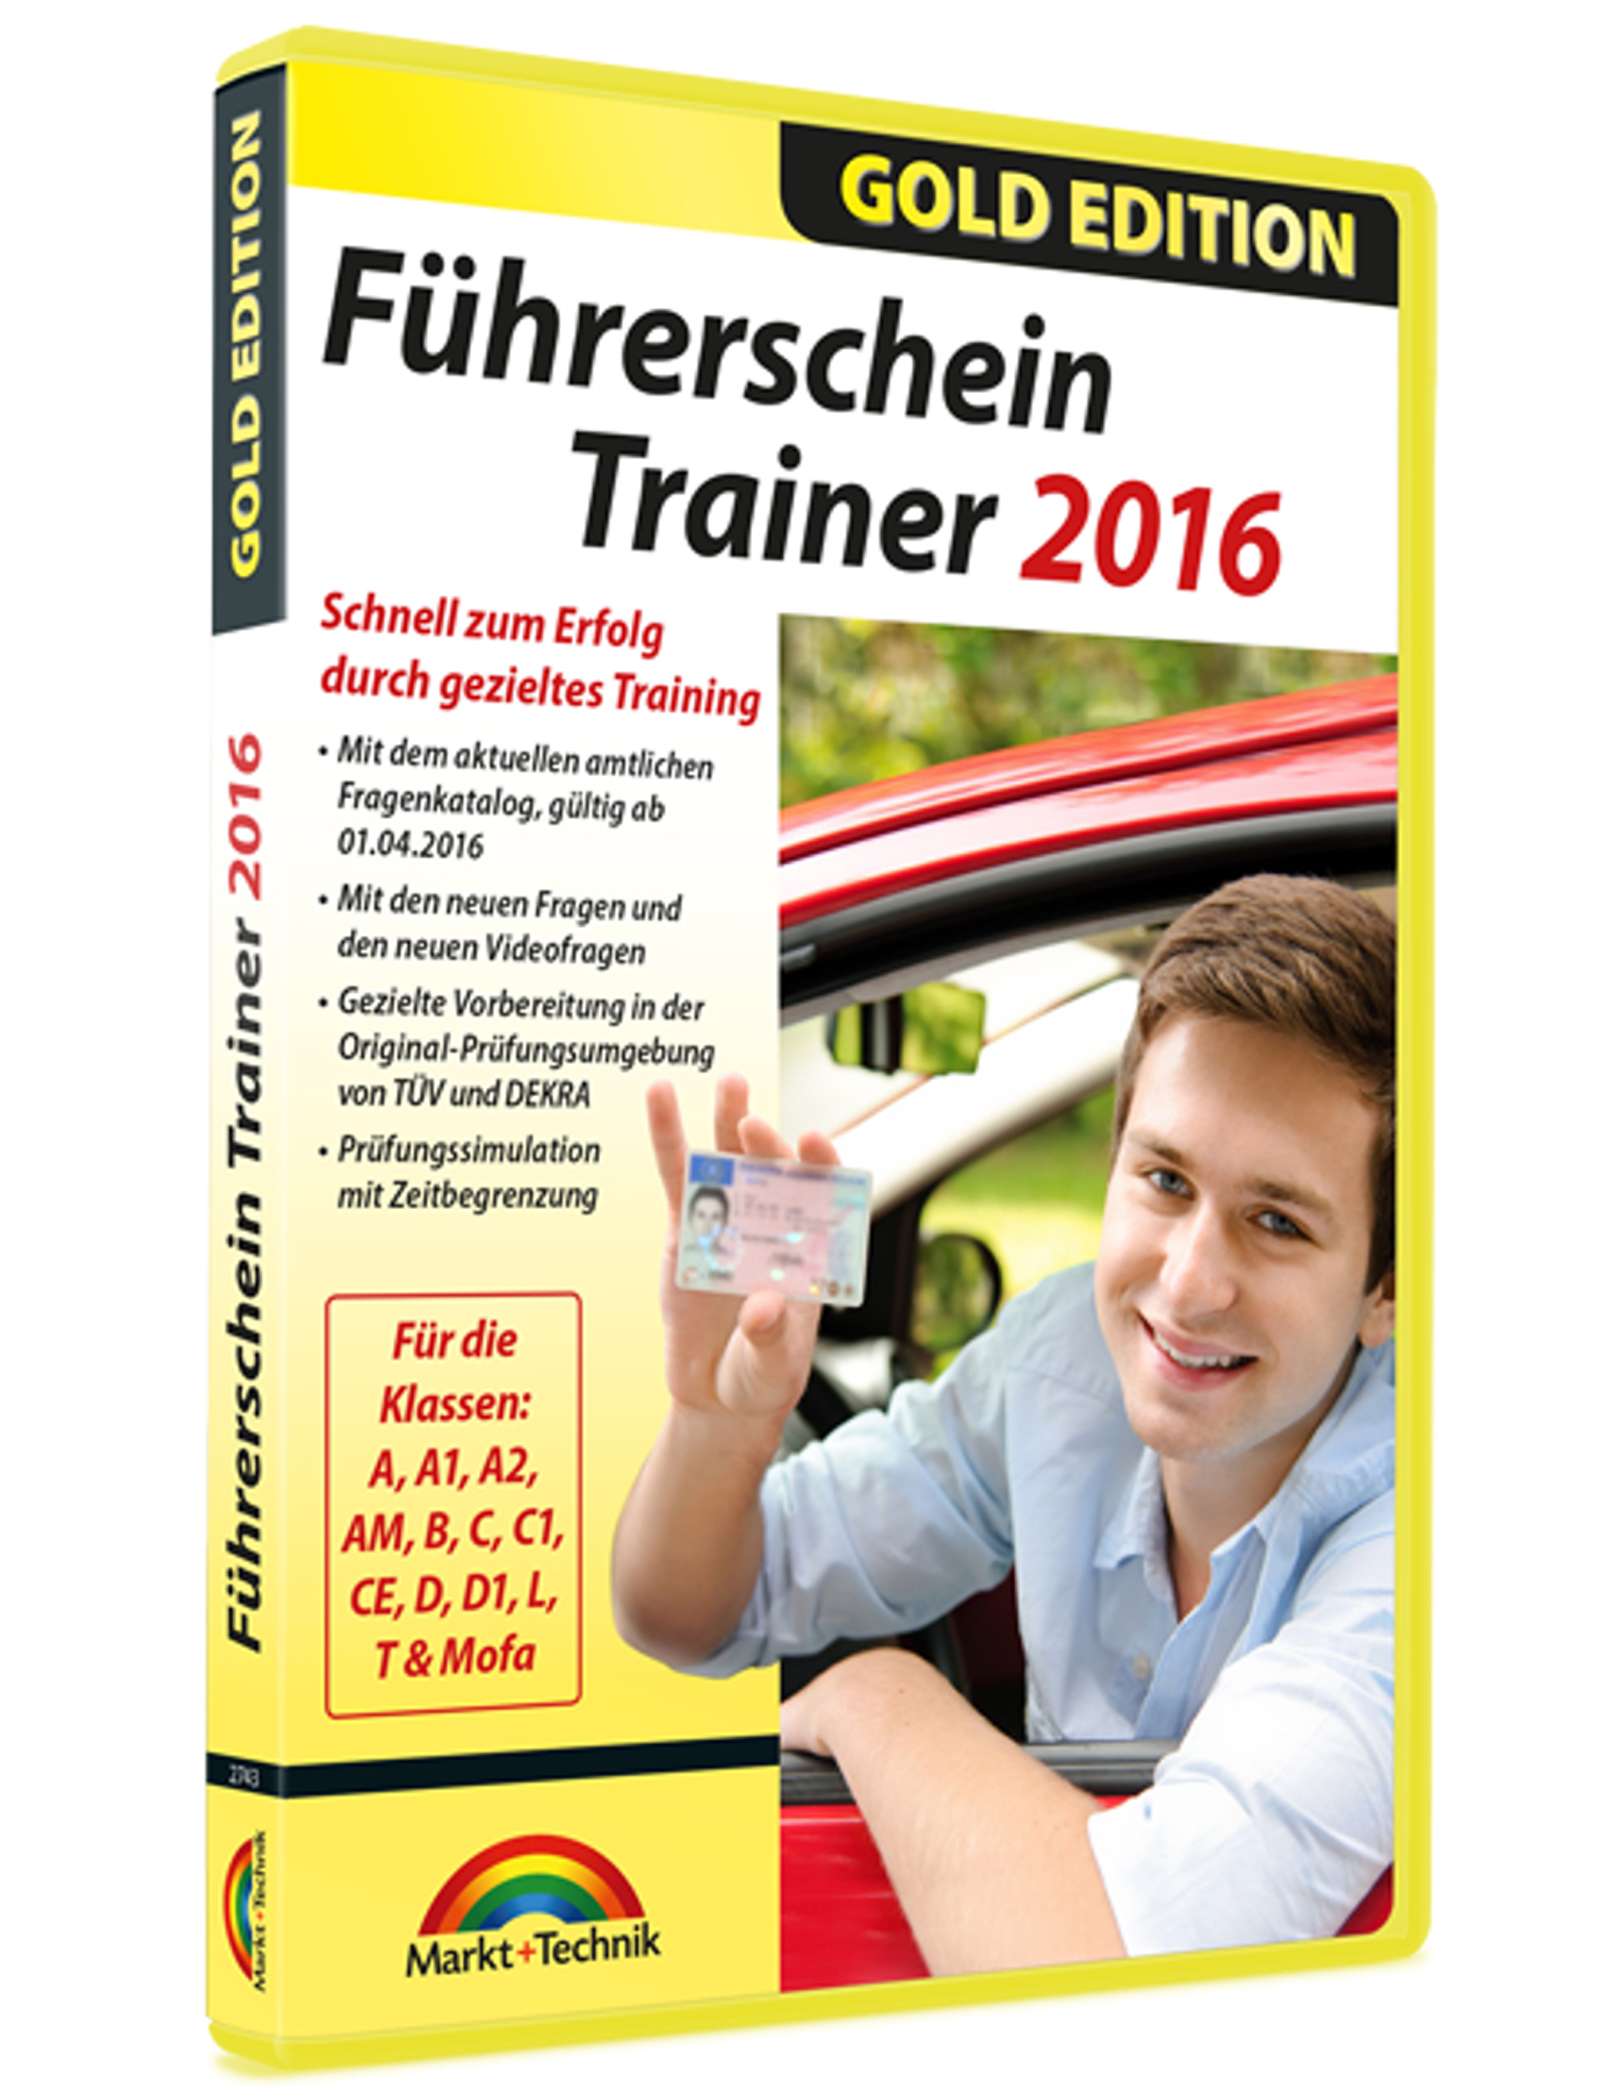 Hauptbild des Produkts: Führerschein Trainer 2016